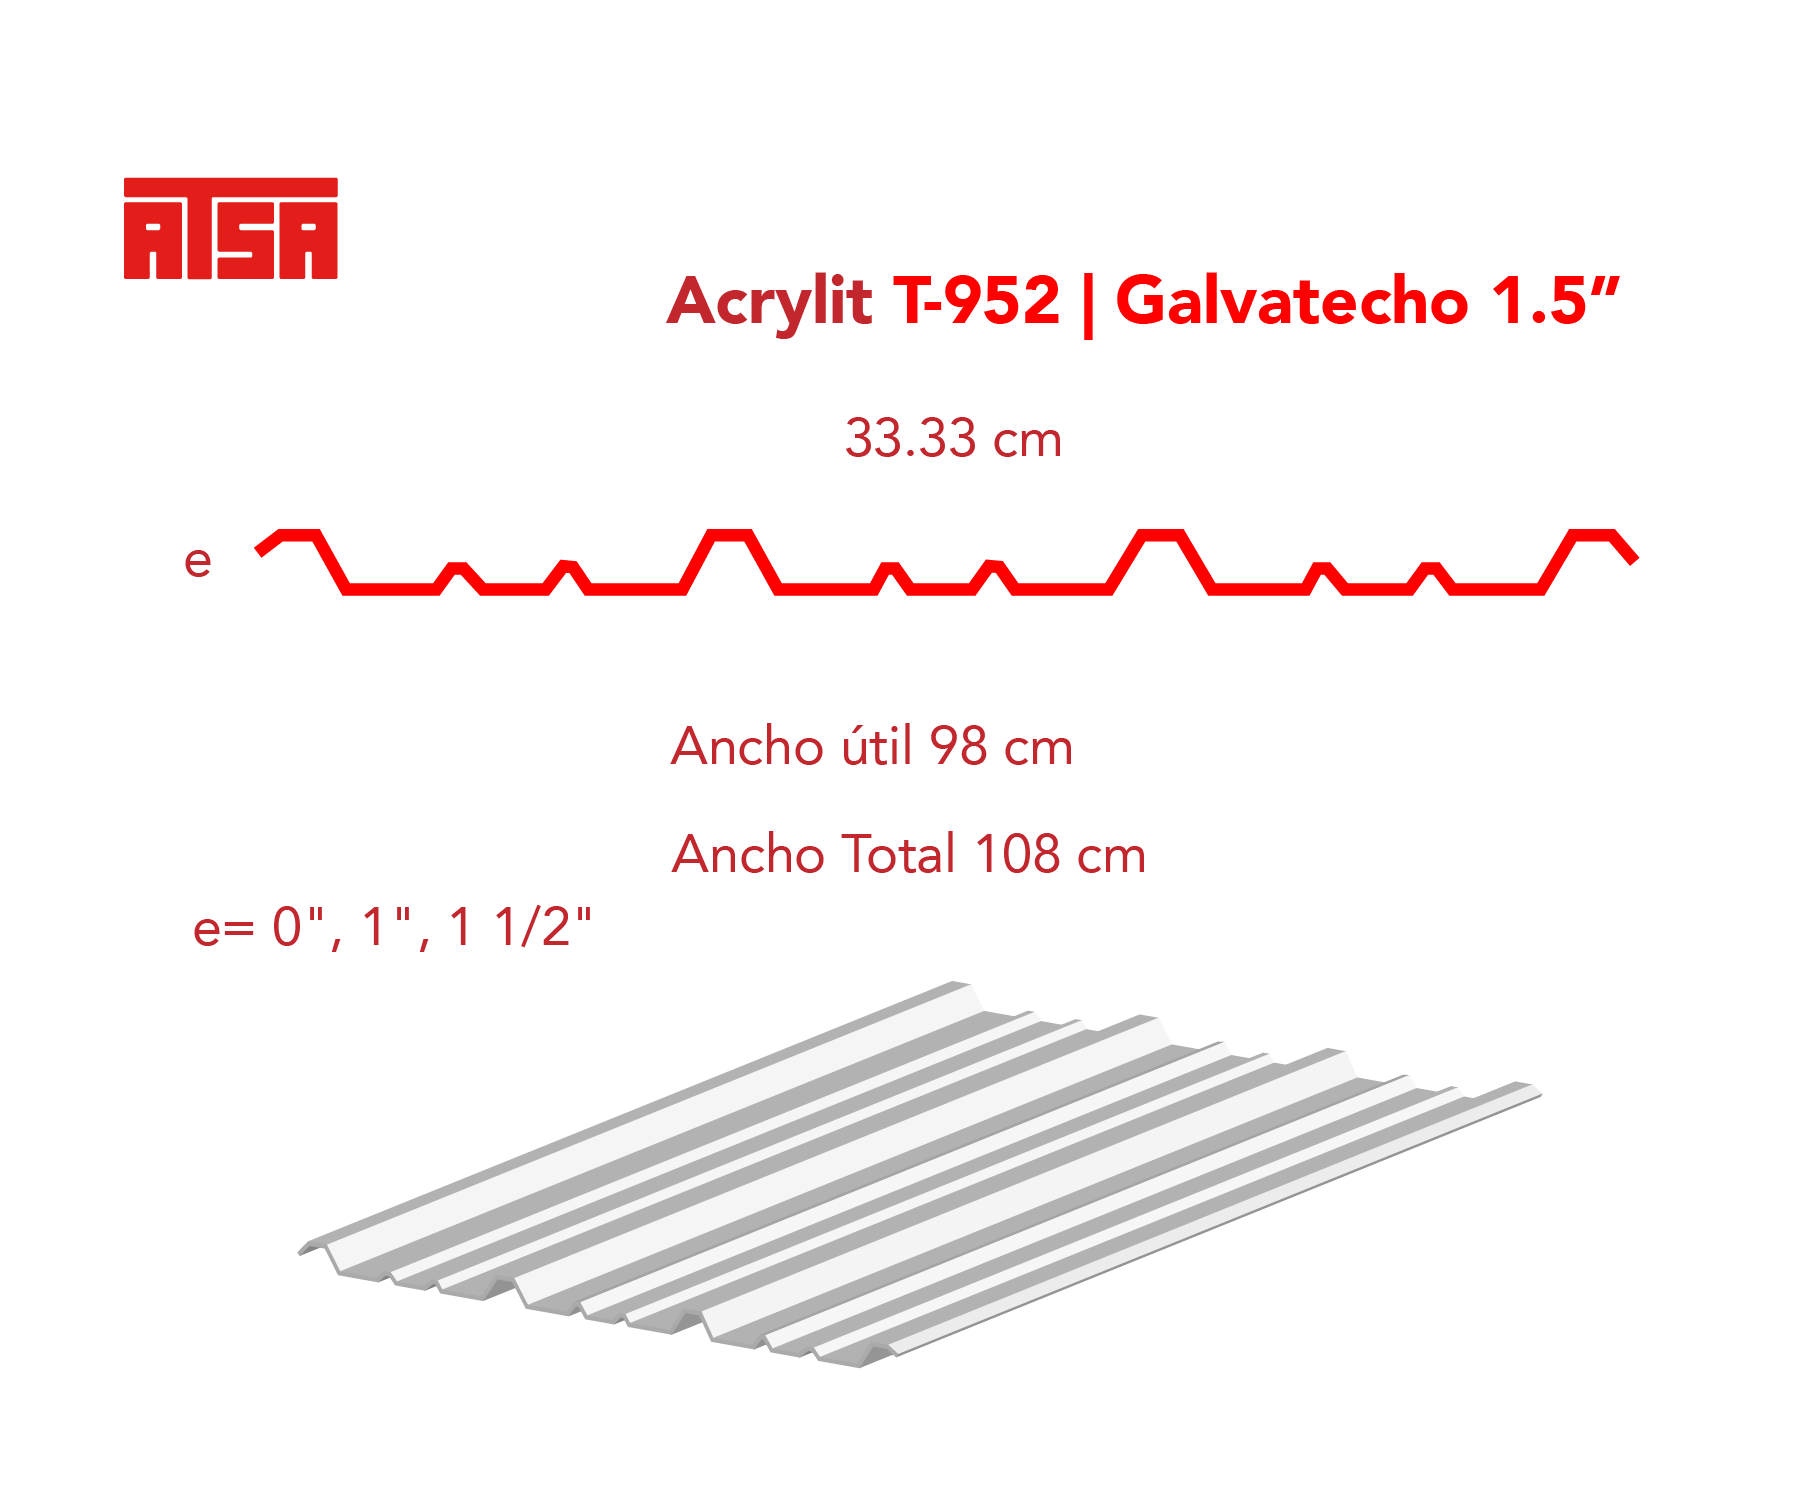 Medidas de la lámina acrylit y-952 traslúcida